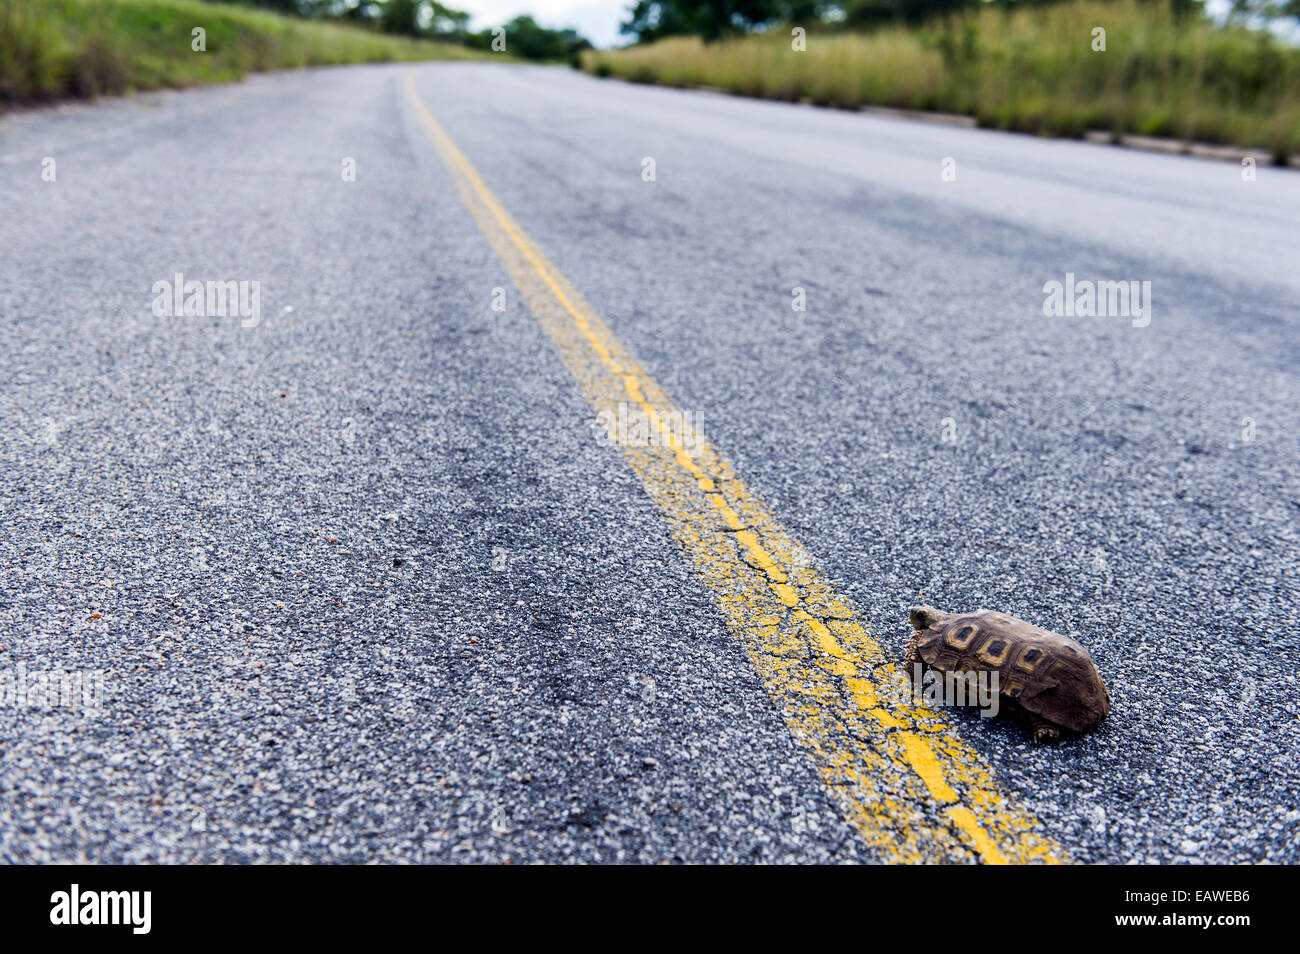 Un loro picuda tortuga en un peligroso viaje a través de una carretera. Foto de stock